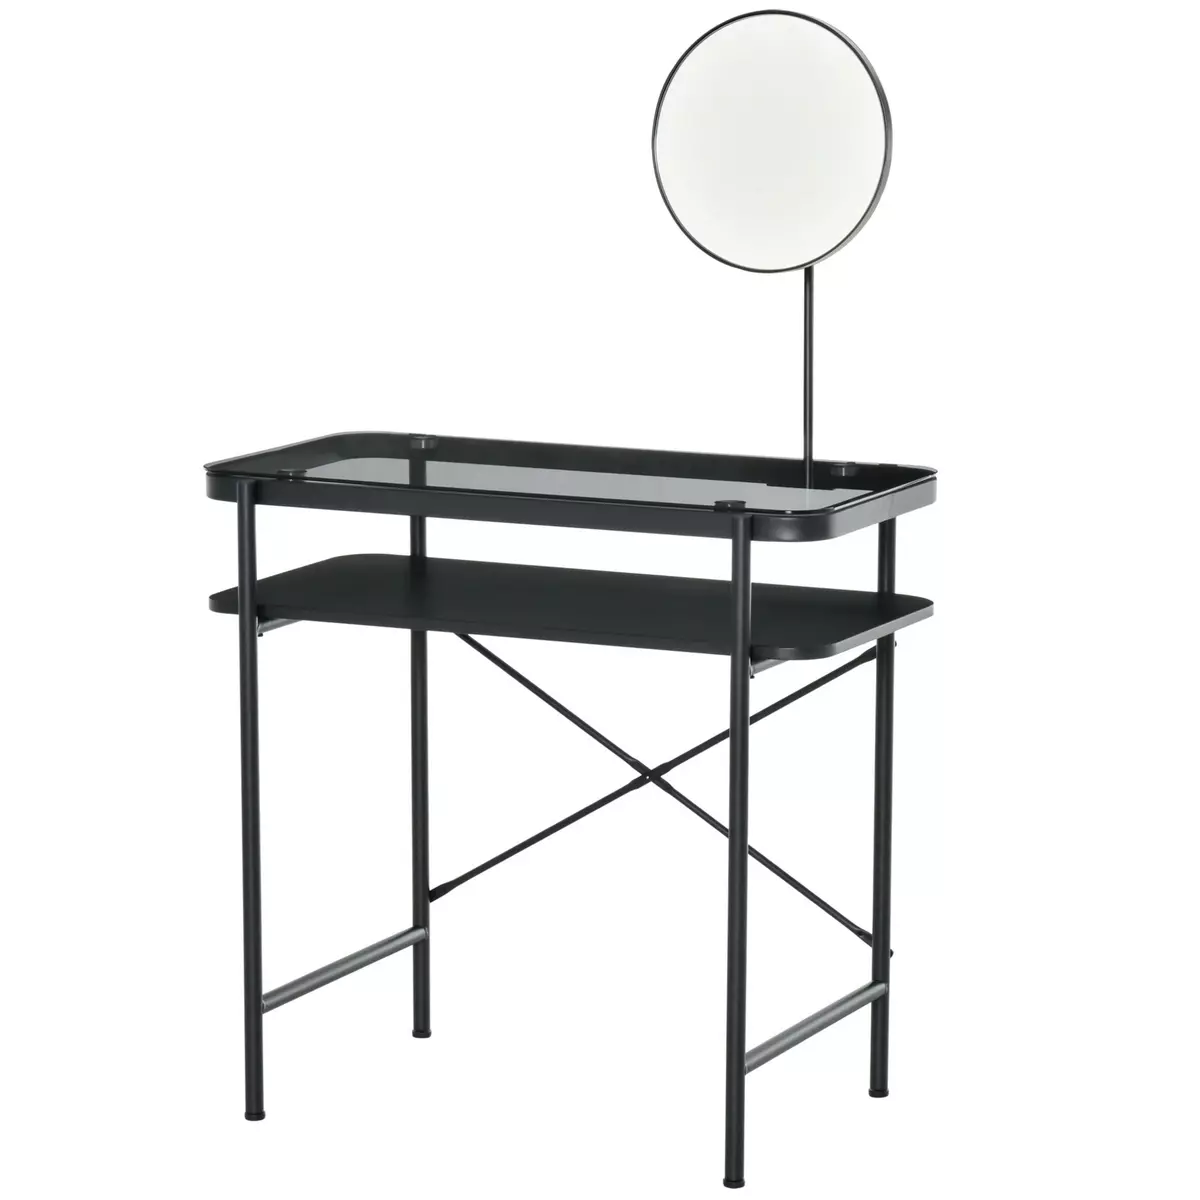 HOMCOM Coiffeuse design contemporain table de maquillage plateau verre trempé étagère miroir pivotant métal noir